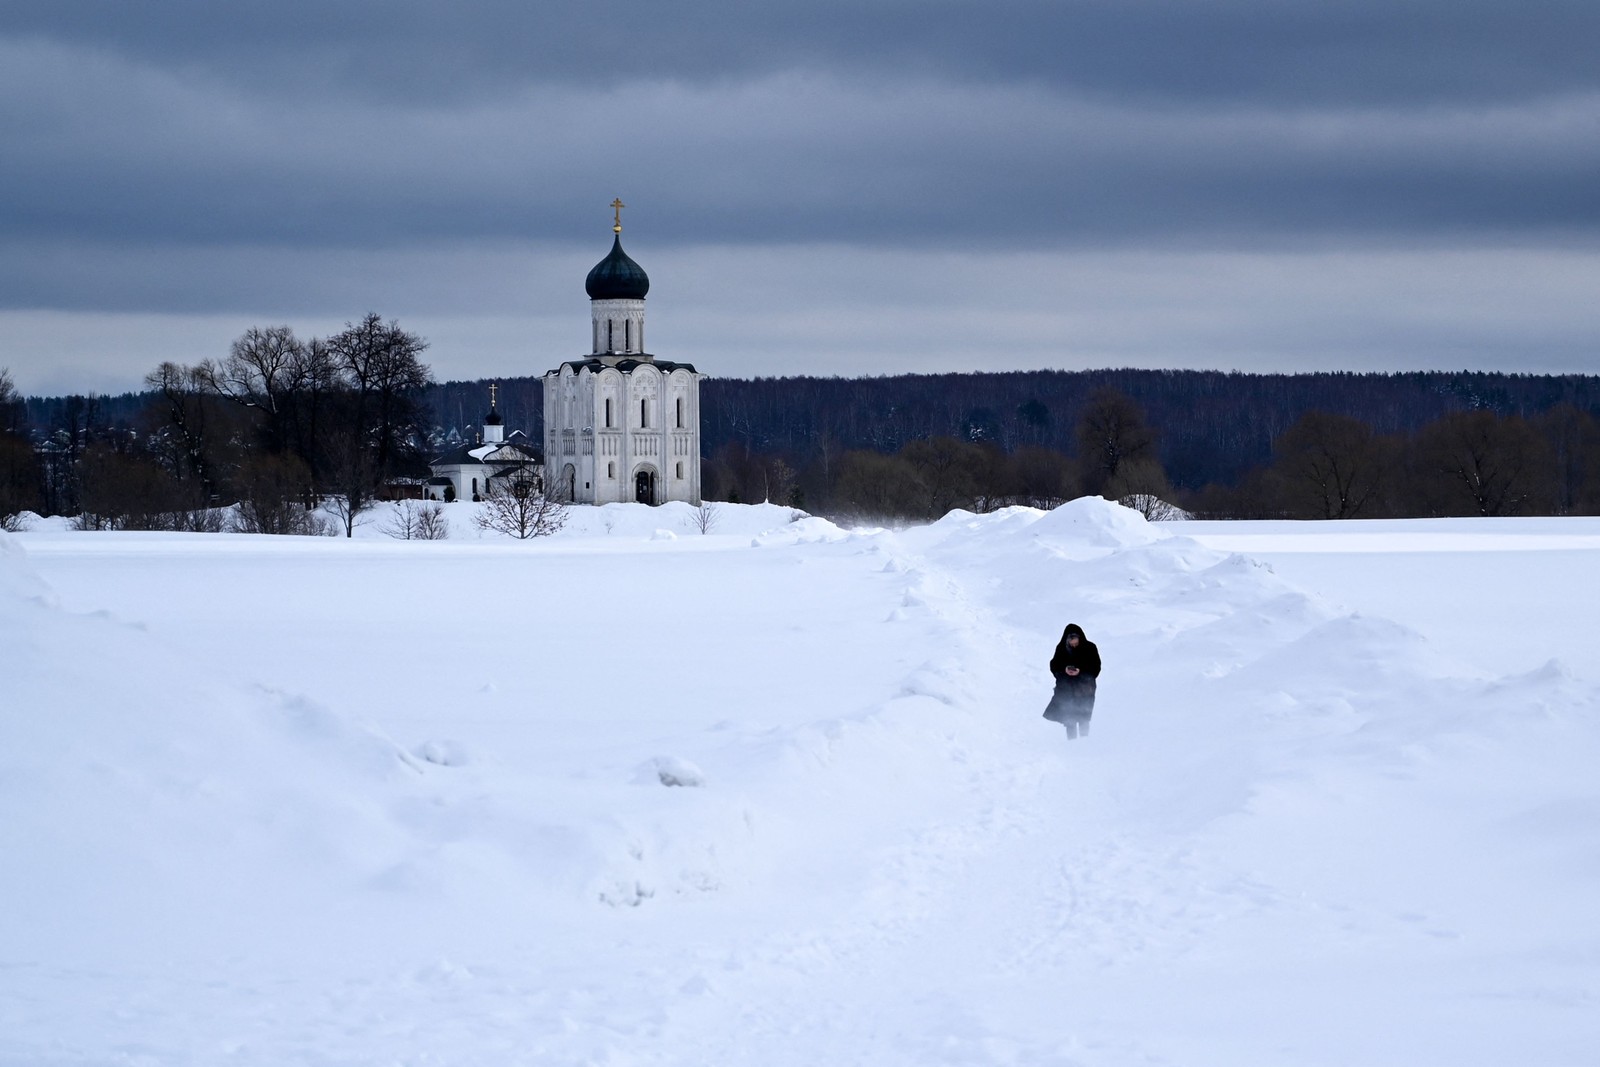 Mmulher caminha em um prado coberto de neve em frente ao Pokrova do século 12 na catedral ortodoxa de Nerli, fora da cidade de Vladimir, a cerca de 200 km de Moscou — Foto: KIRILL KUDRYAVTSEV/AFP